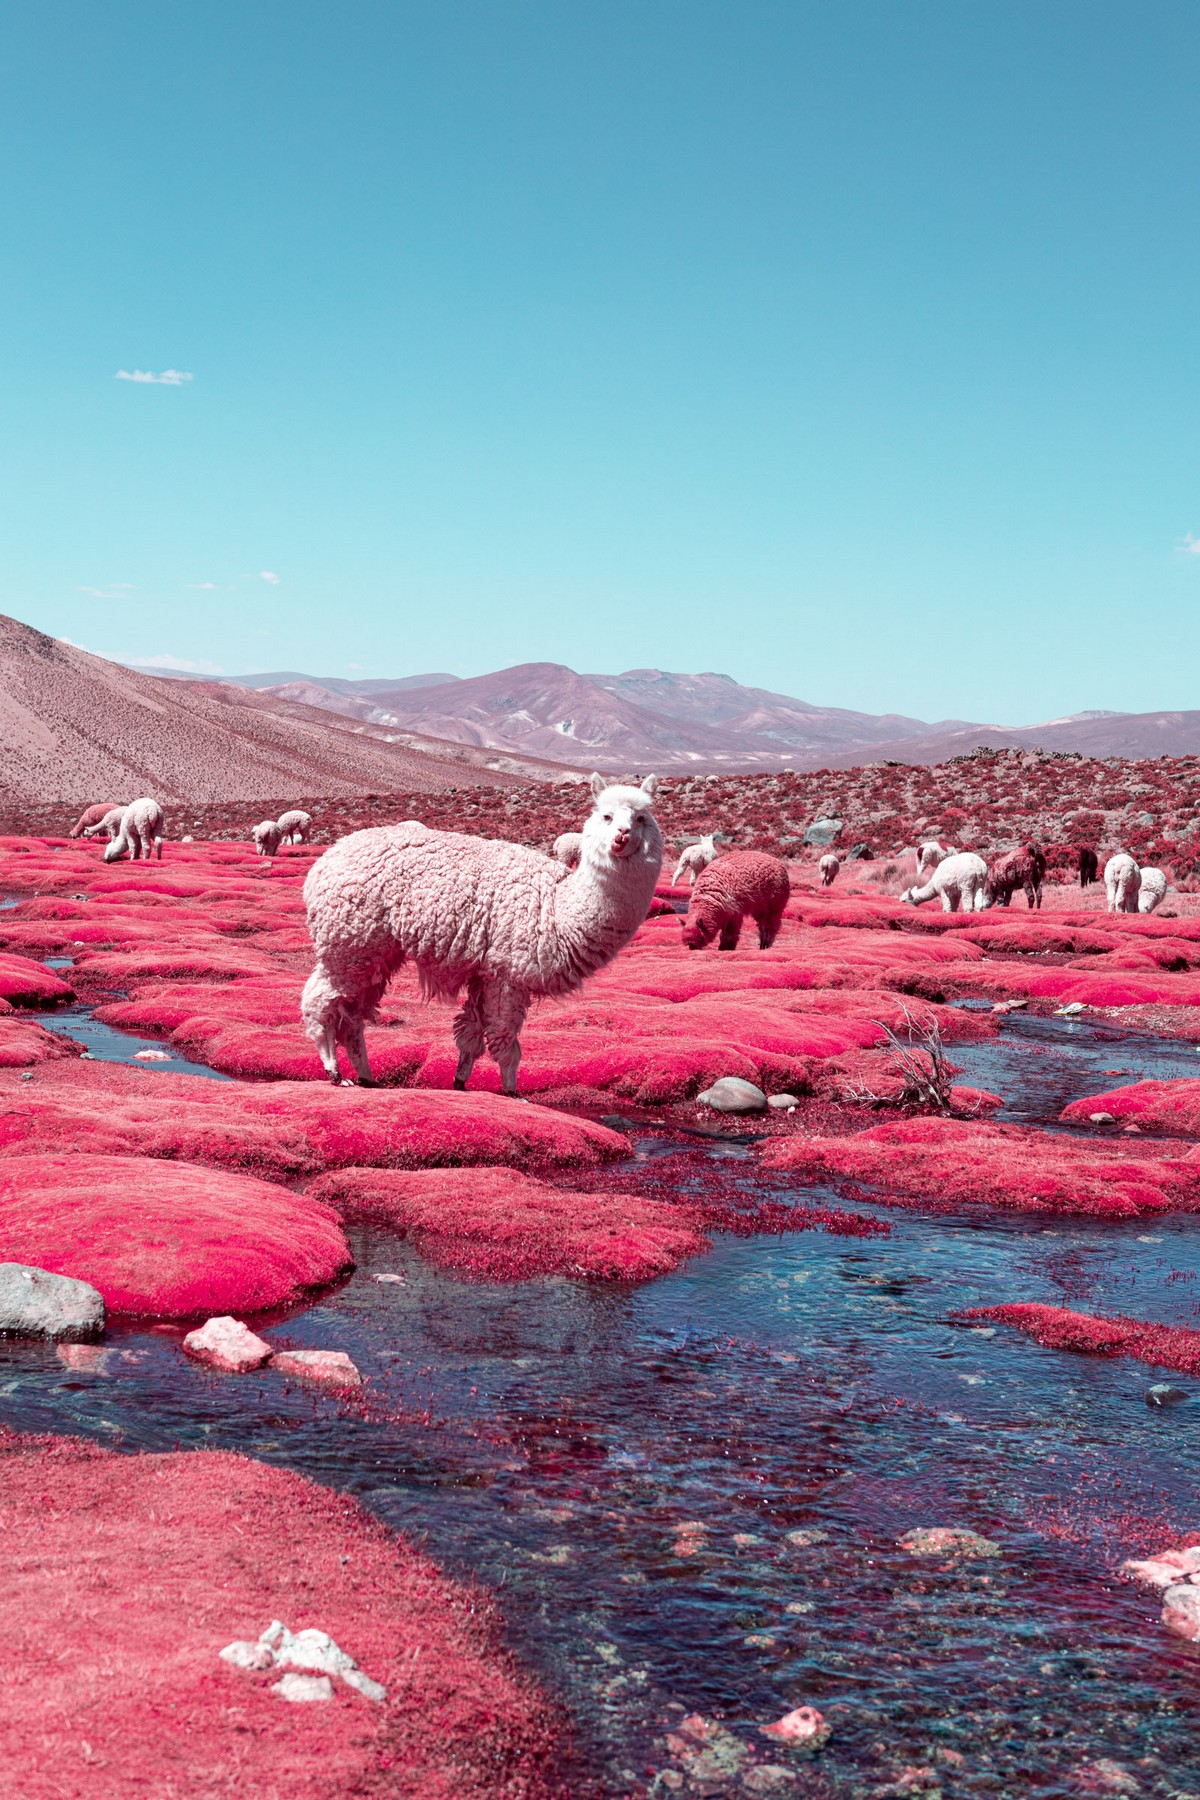 Сюрреалистические инфракрасные пейзажные снимки от Паоло Петтиджани Картинки и фото